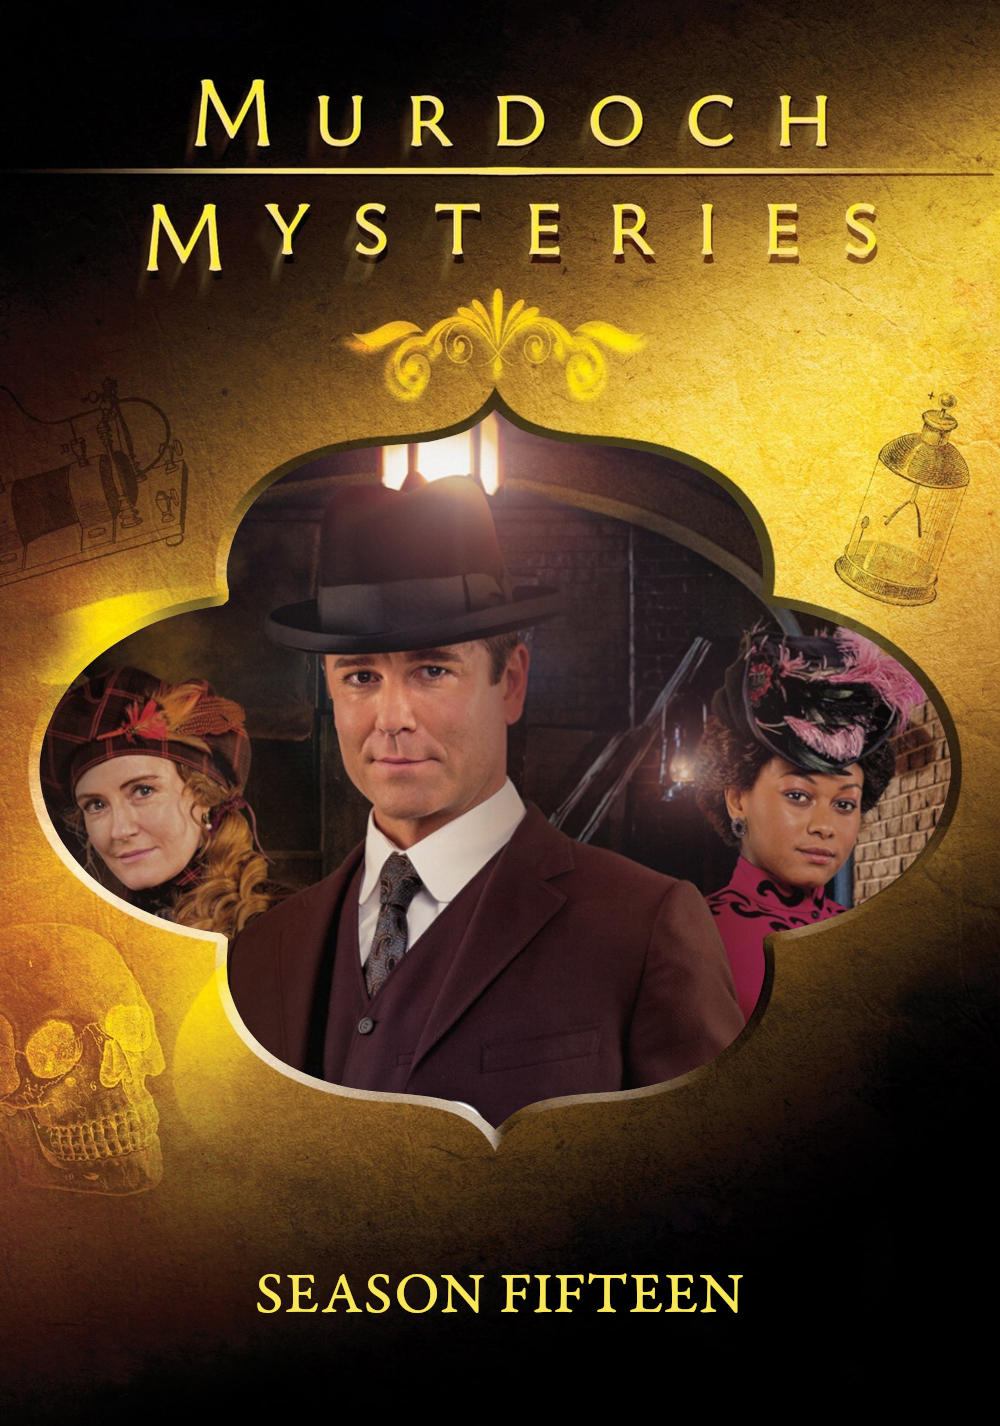 Murdoch Mysteries (2008) S15pt1 E17->E24 NLsubs